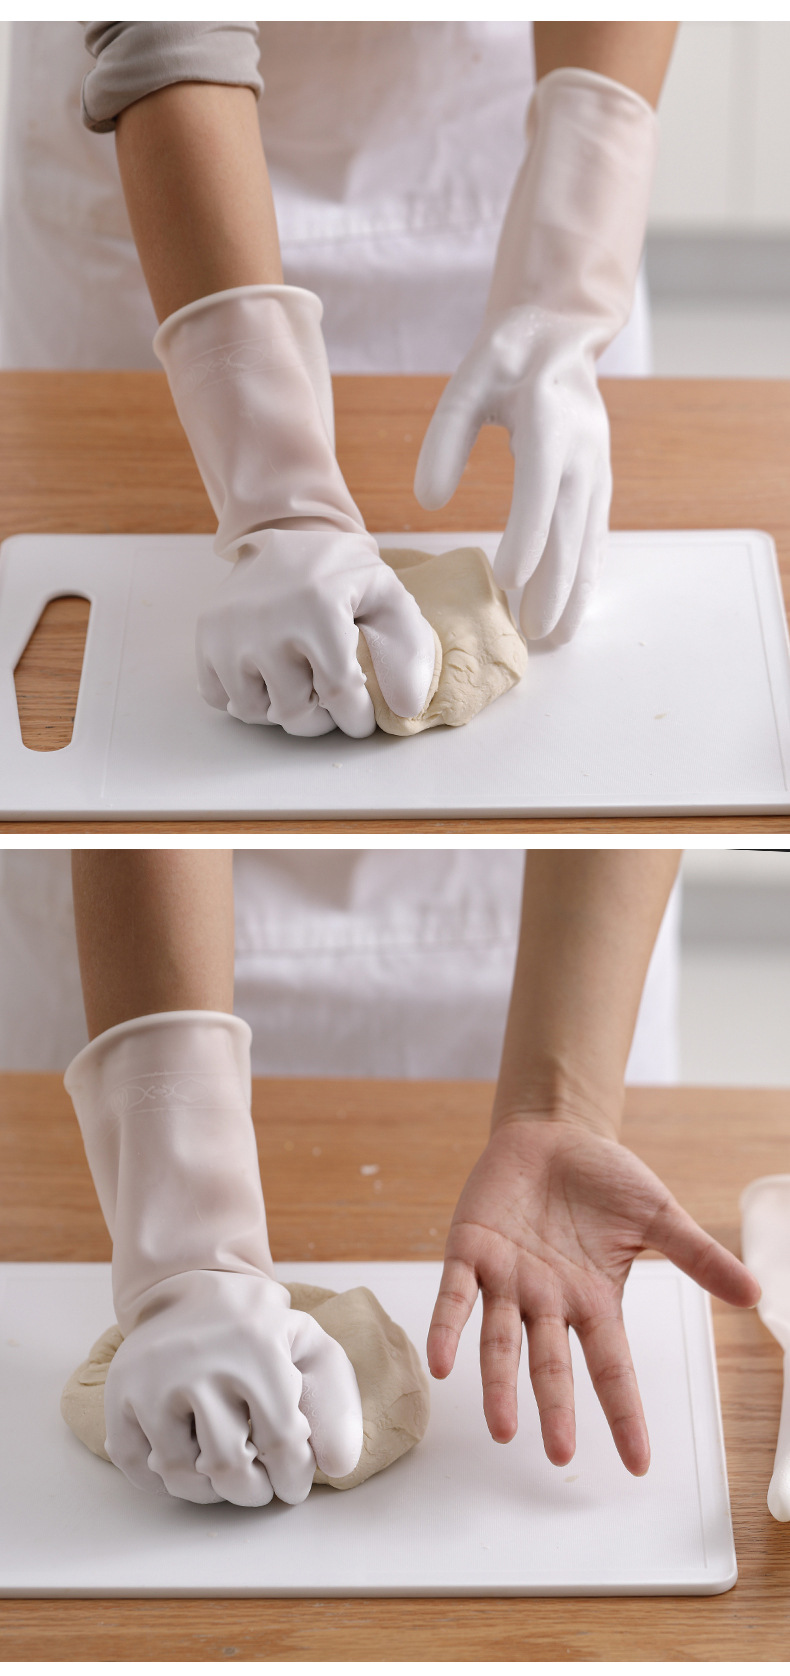 半透明橡膠手套 居家清潔手套 防滑耐用廚房手套 洗衣洗碗手套7